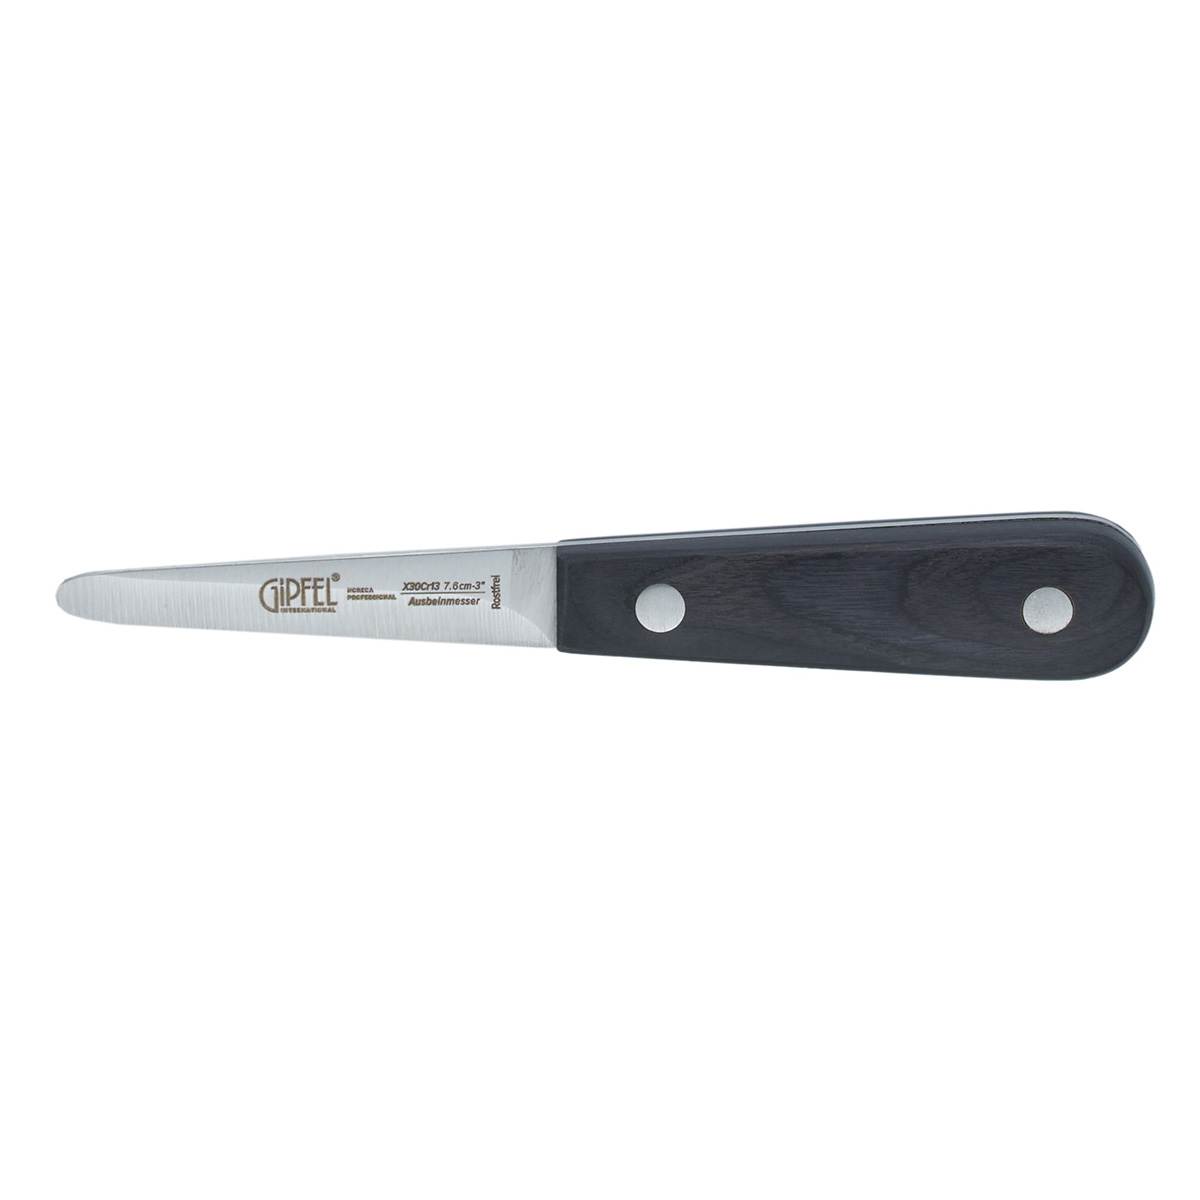 Нож для устриц Gipfel Horeca Pro 50587 16 см нож для устриц доляна 14×4 4 см длина лезвия 5 7см цвет чёрный